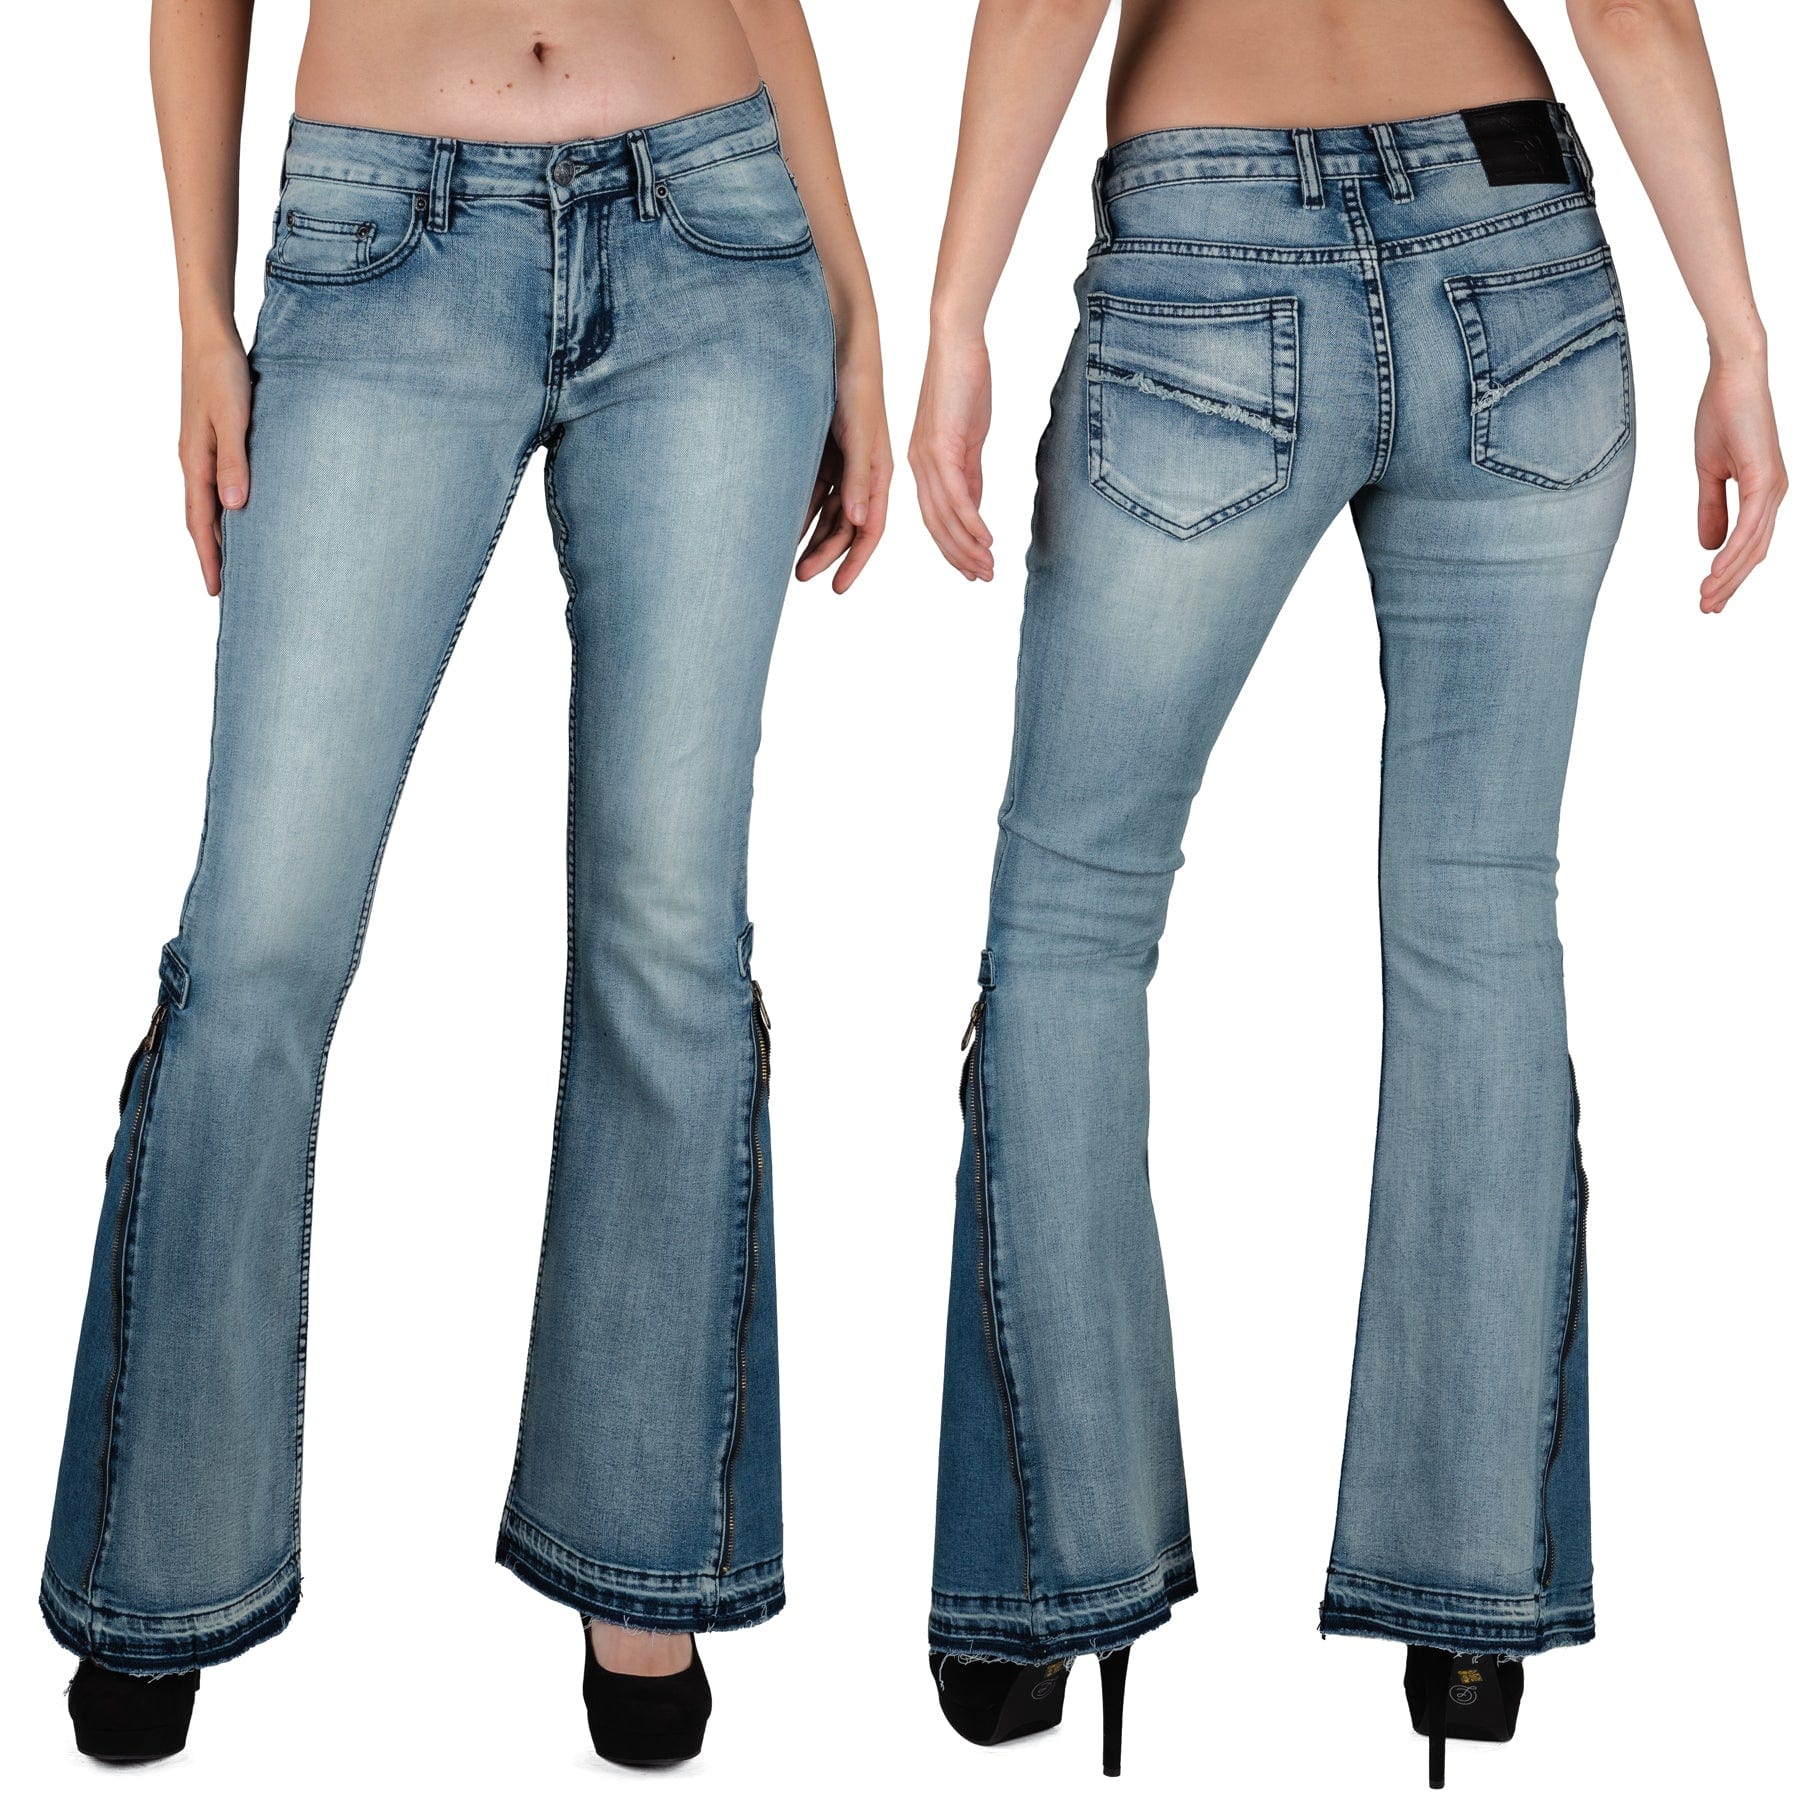 Wornstar Clothing Hellraiser Side Zipper Unsex Jeans - Classic Blue